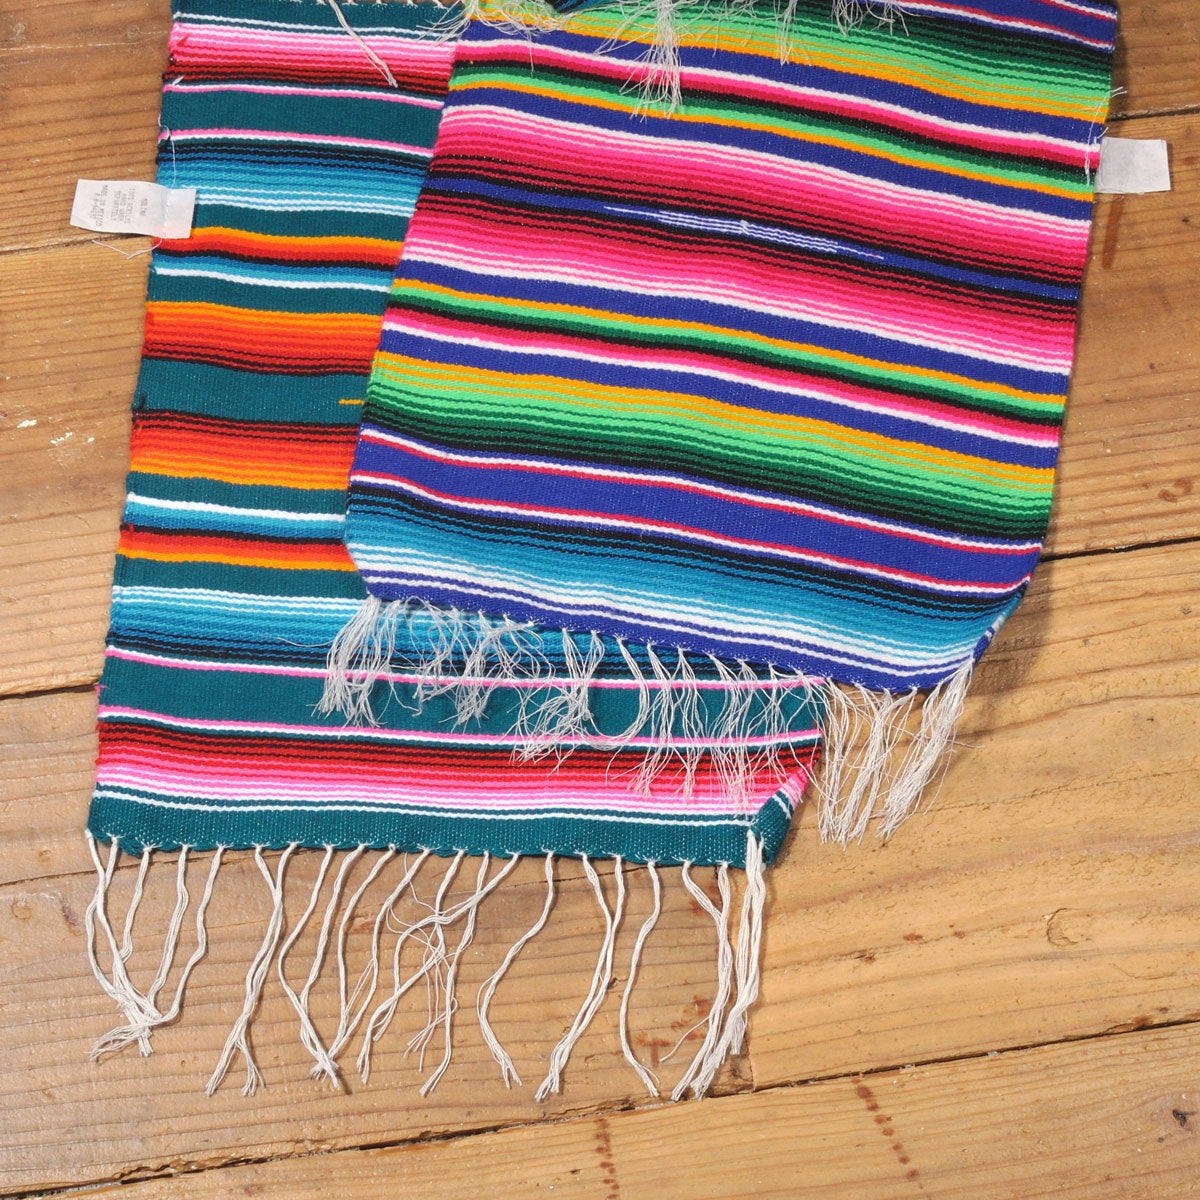 モリーナインディアンブランケット (Molina Indian Blanket) Mexican Serape  Placemat/メキシカンサラペプレースマット[約40×30cm]ORANGE/FIRE